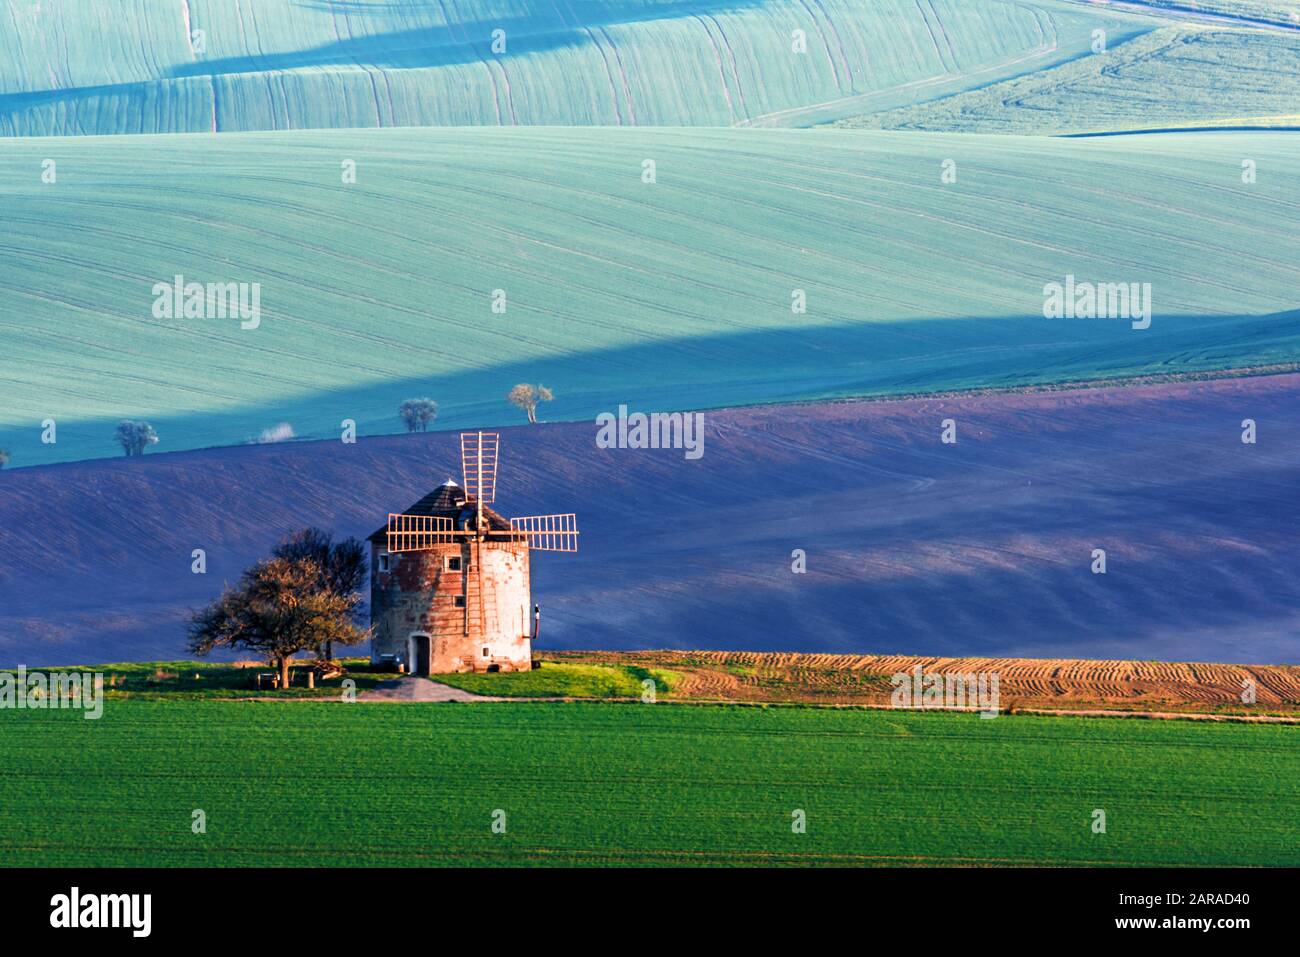 Magnifique paysage rural avec ancien moulin à vent et collines verdoyantes ensoleillées de printemps. Région De La Moravie Du Sud, République Tchèque Banque D'Images